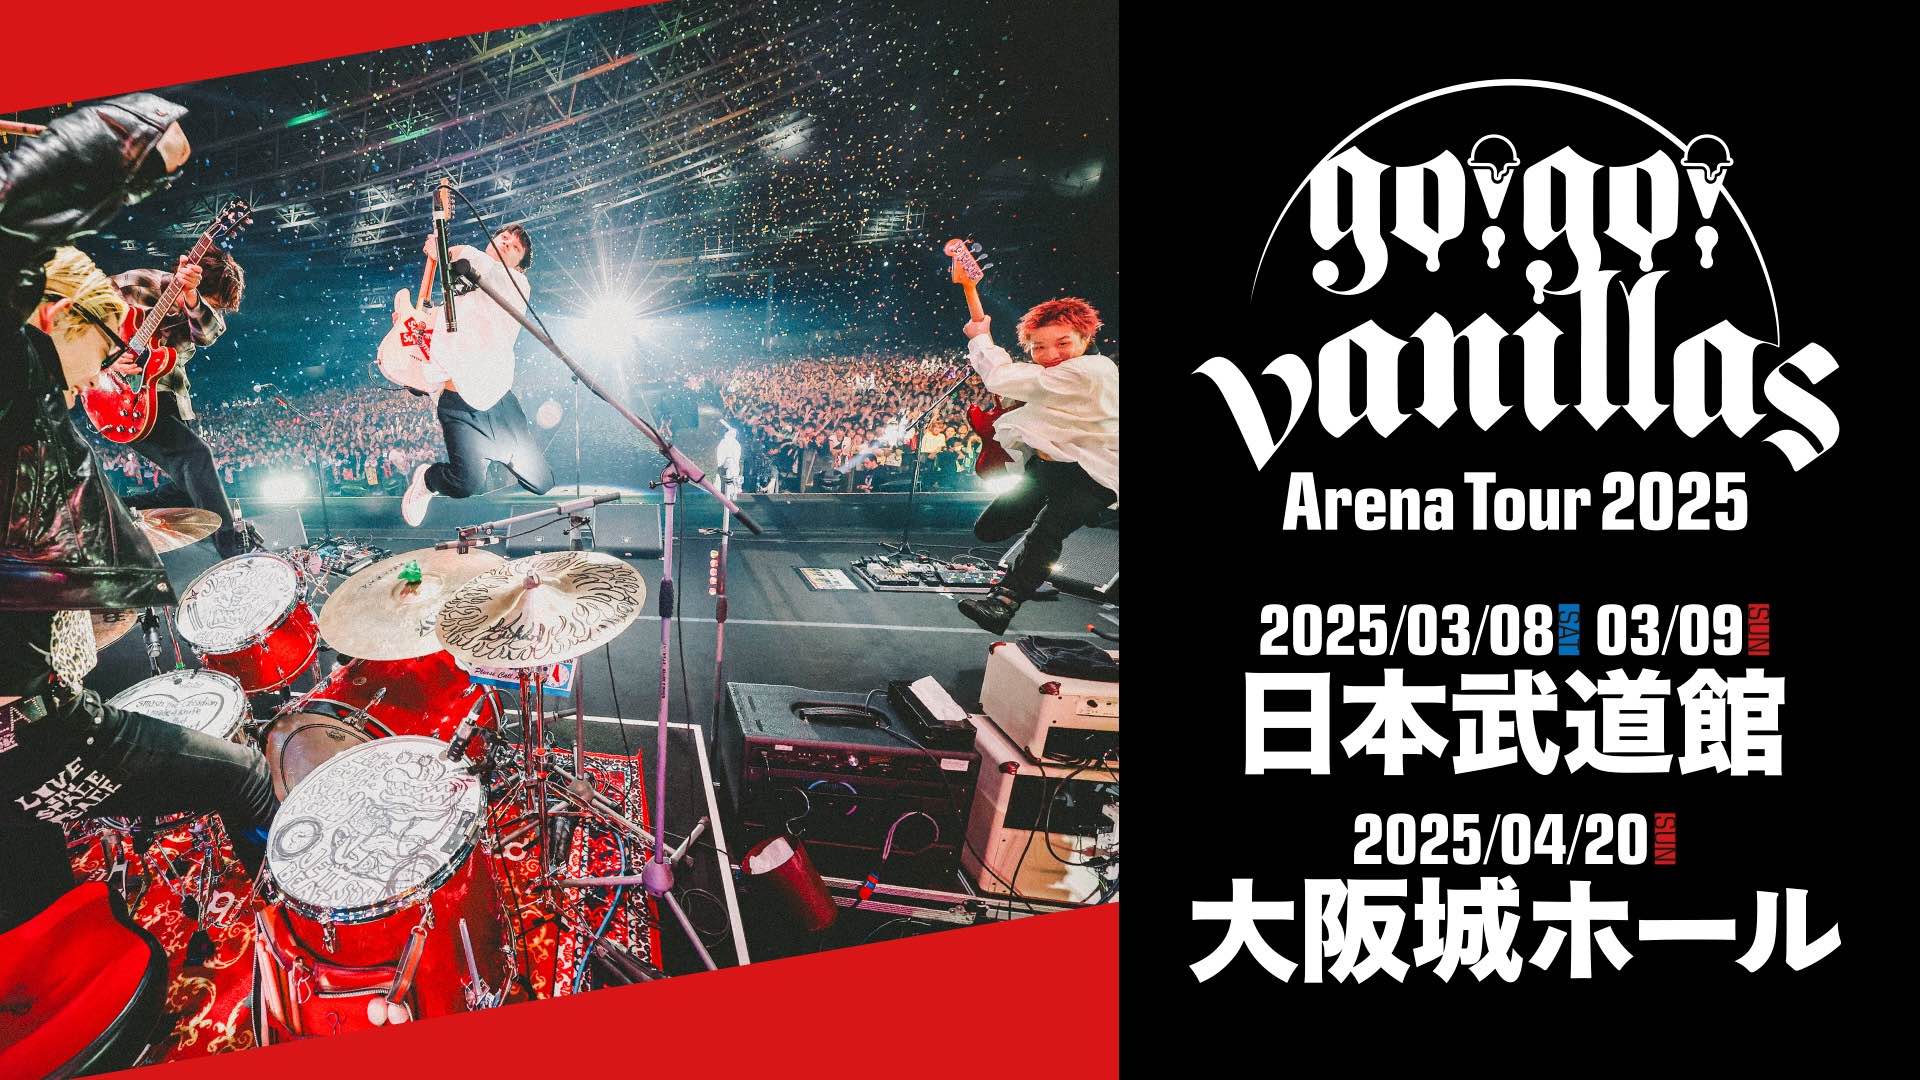 大阪城ホール <span class="live-title"> go!go!vanillas Arena Tour 2025 </span>